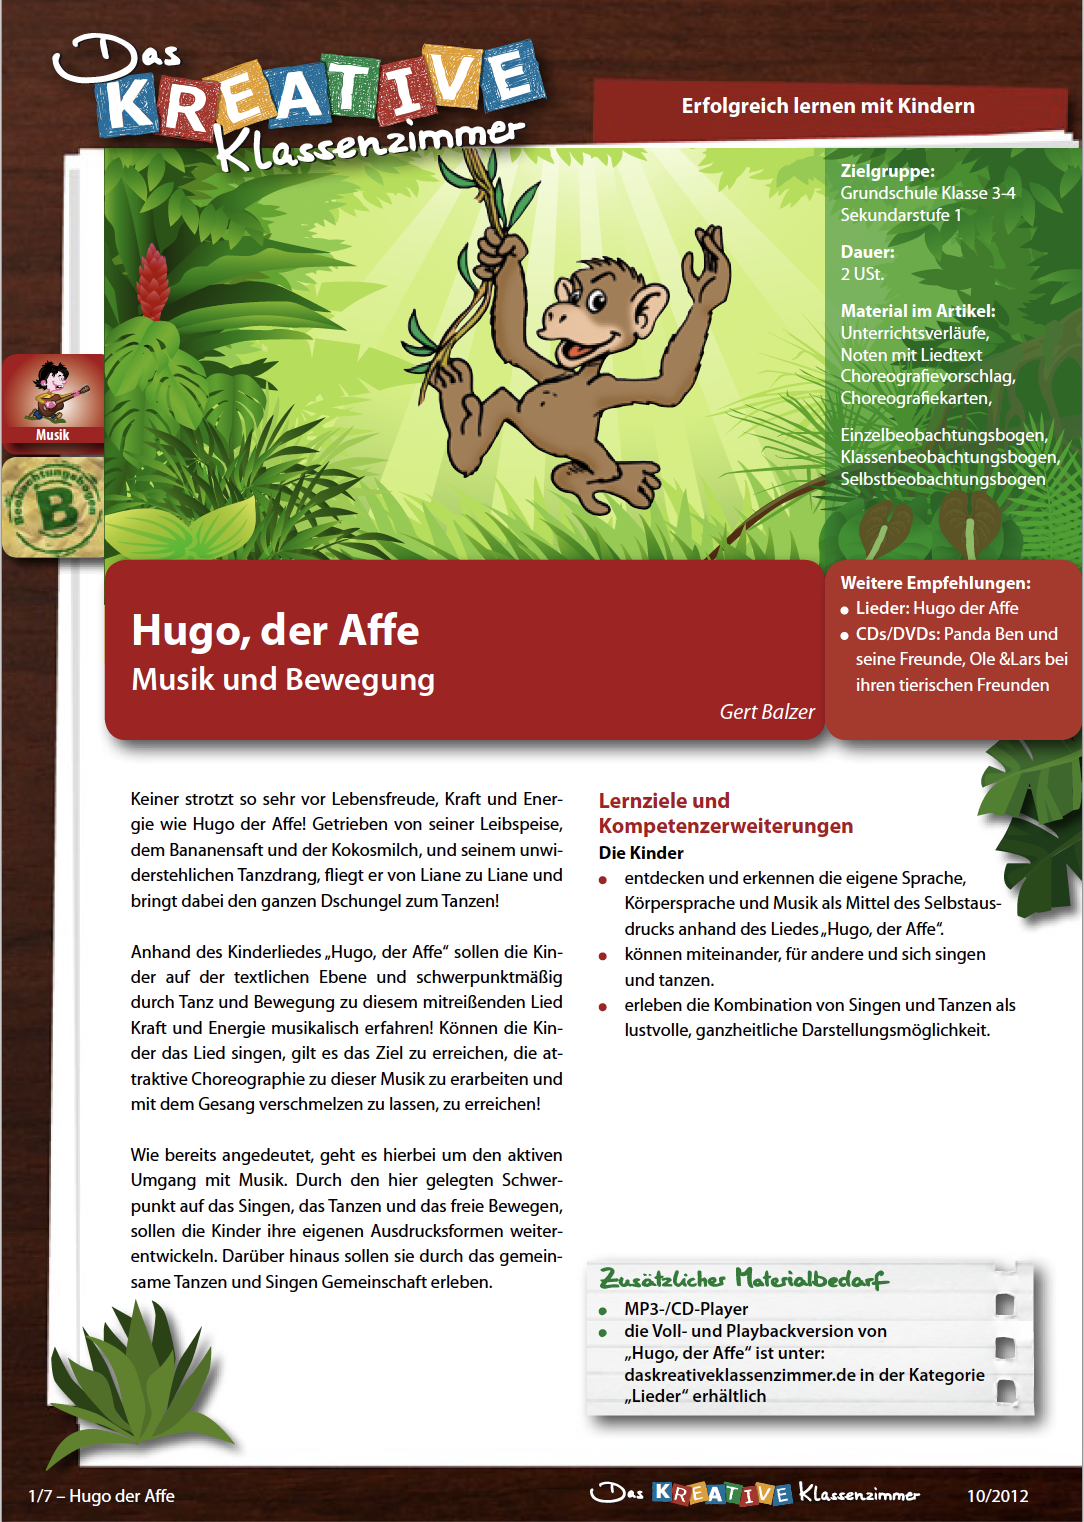 Hugo der Affe - Musik und Bewegung